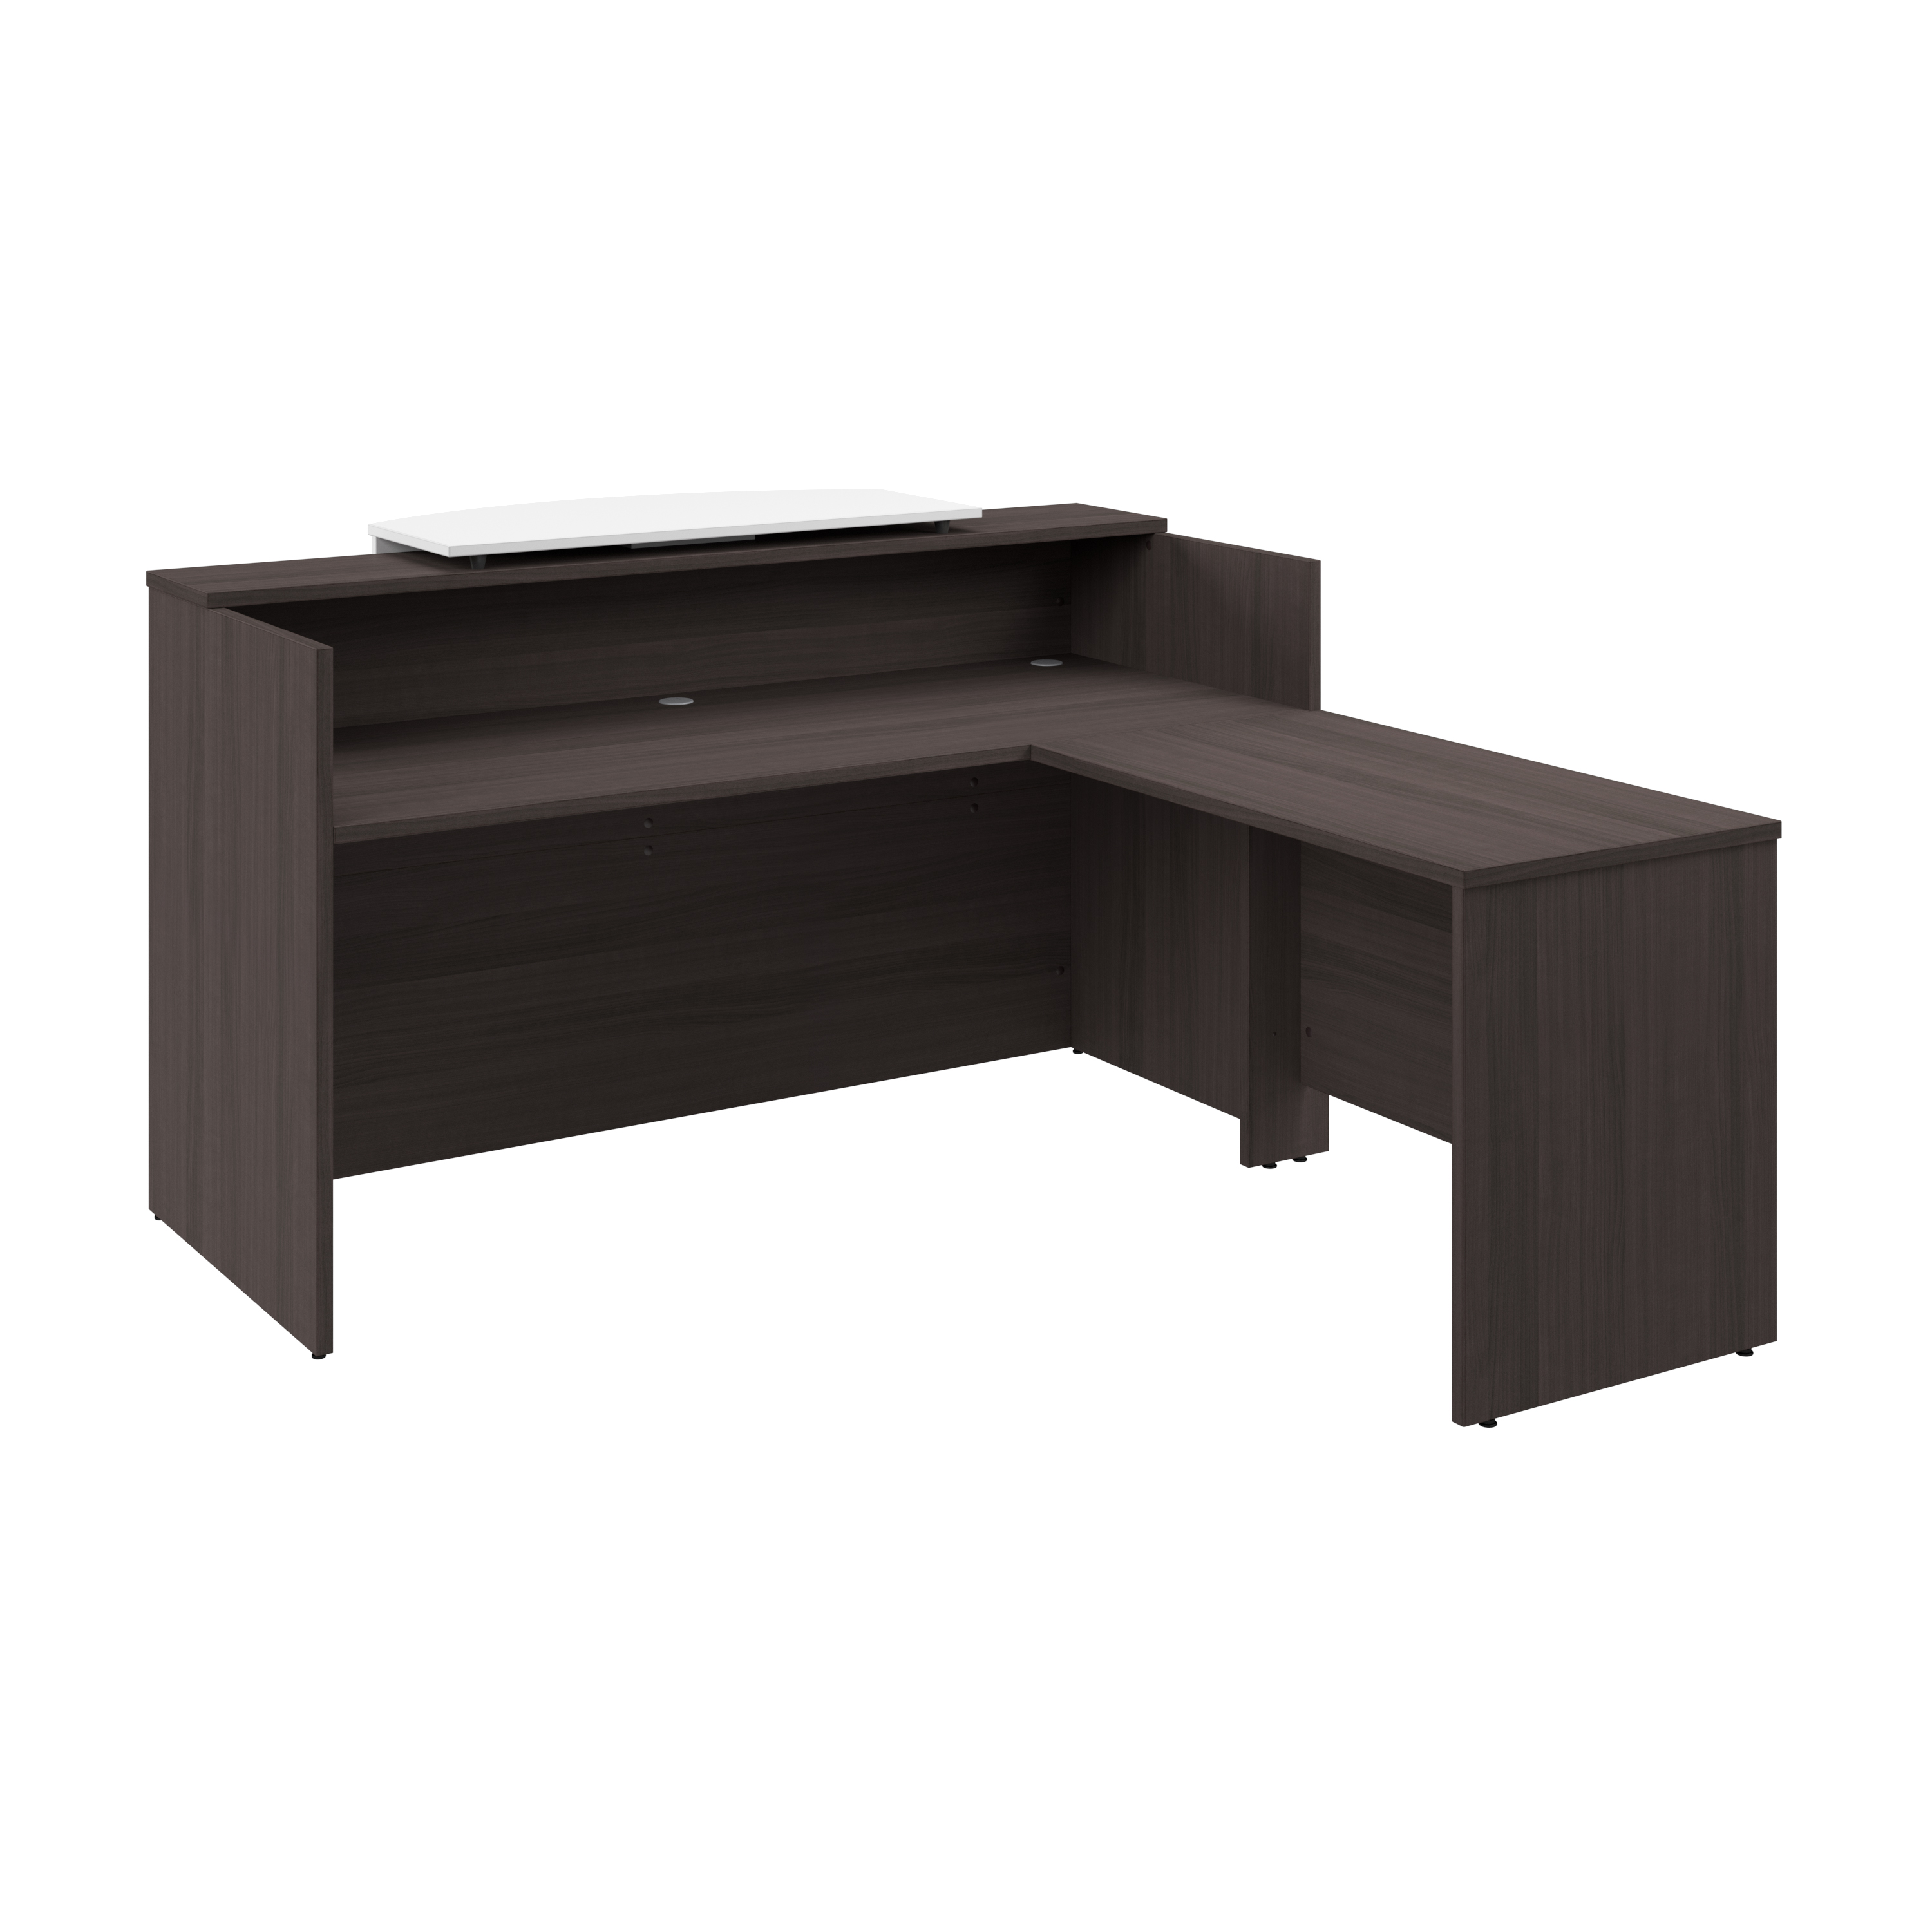 Shop Bush Business Furniture Arrive 72W x 72D L Shaped Reception Desk with Counter 02 ARV009SG #color_storm gray